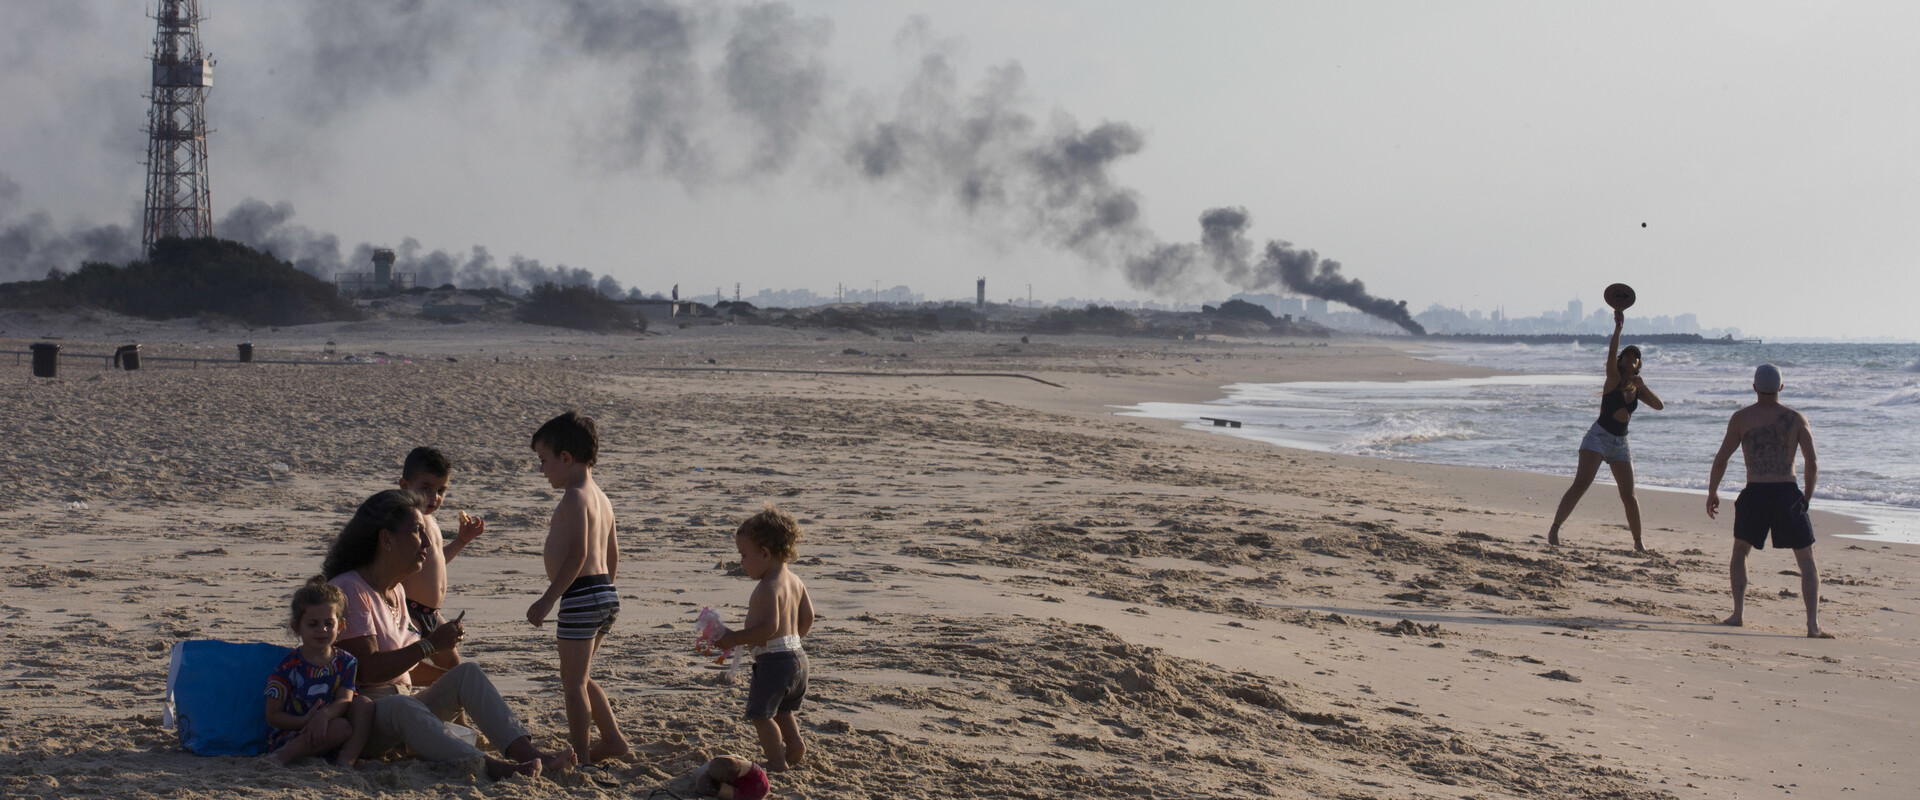 רוחצים בחוף זיקים, ברקע עשן מהמחאה ליד גדר הגבול עם עזה, 2018 (צילום: ap)